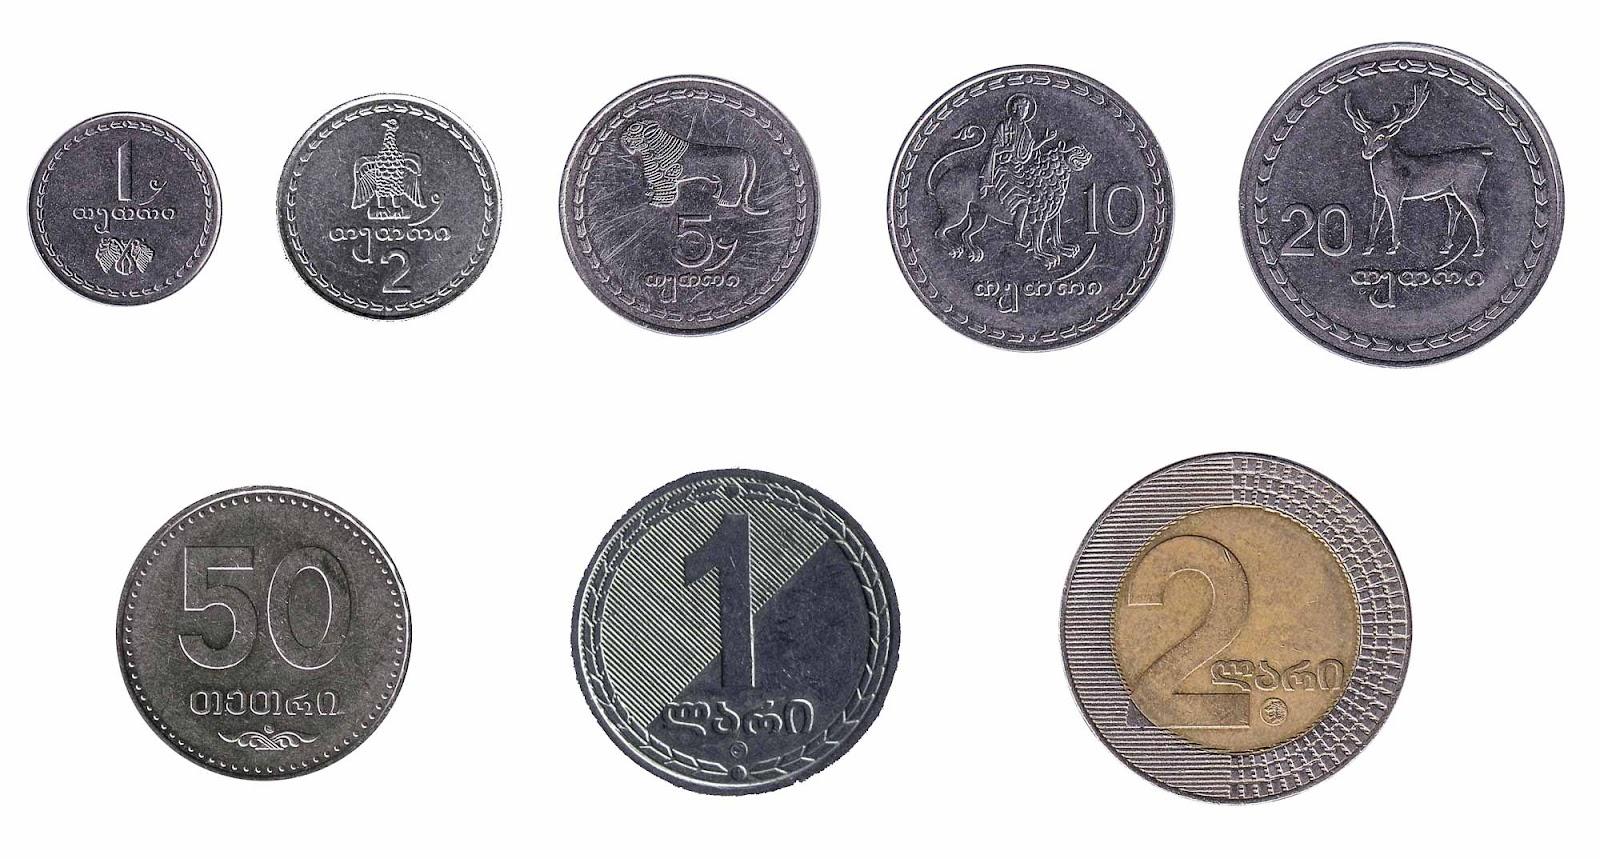 Georgian lari coins